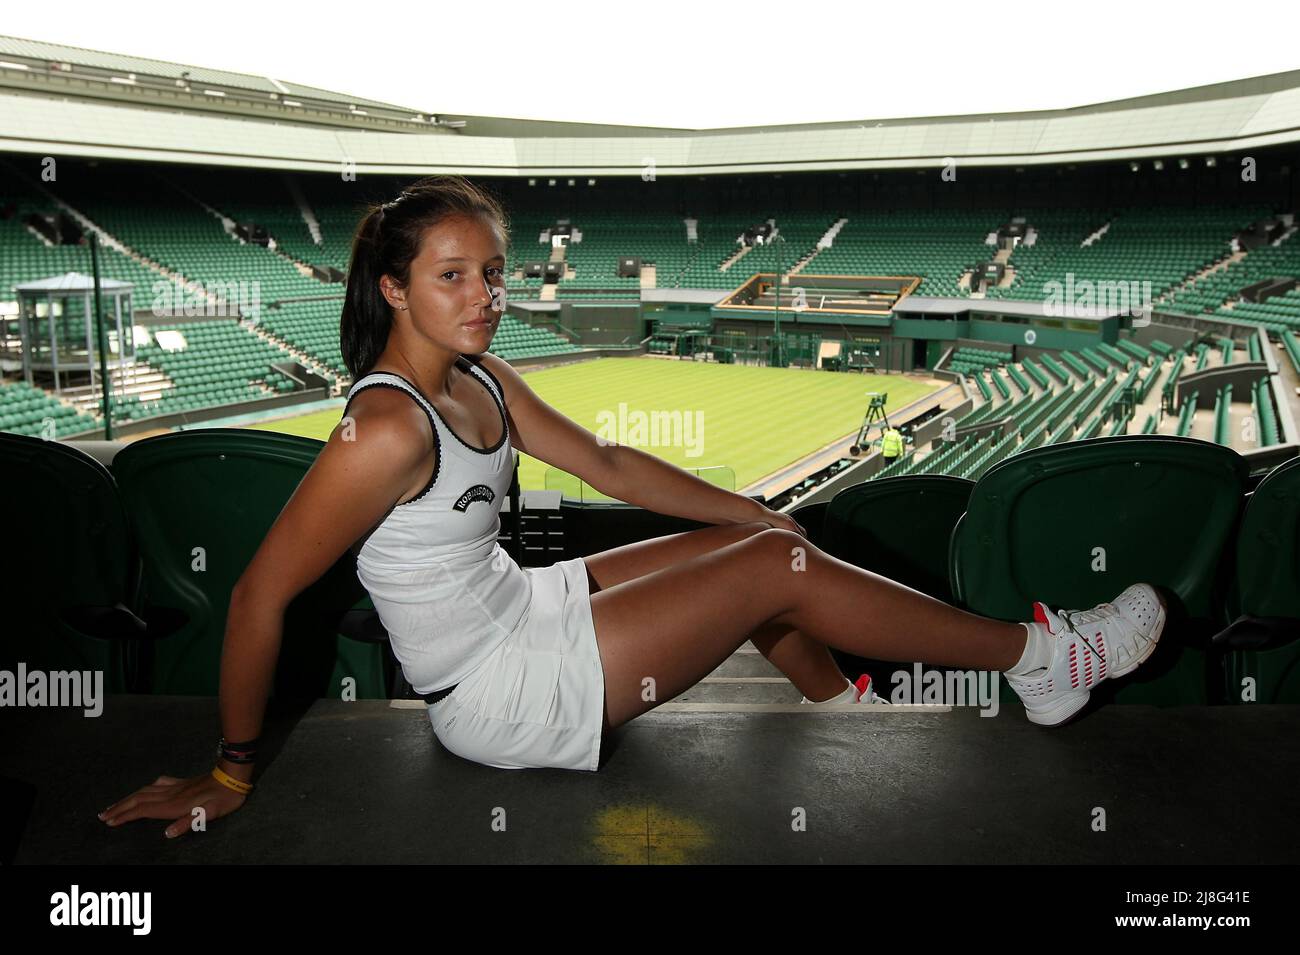 Foto del archivo fechada el 10-05-2010 de Laura Robson haciendo una aparición en Wimbledon. Laura Robson, ex número uno británica, anuncia su retiro del tenis. Fecha de emisión: Lunes 16 de mayo de 2022. Foto de stock